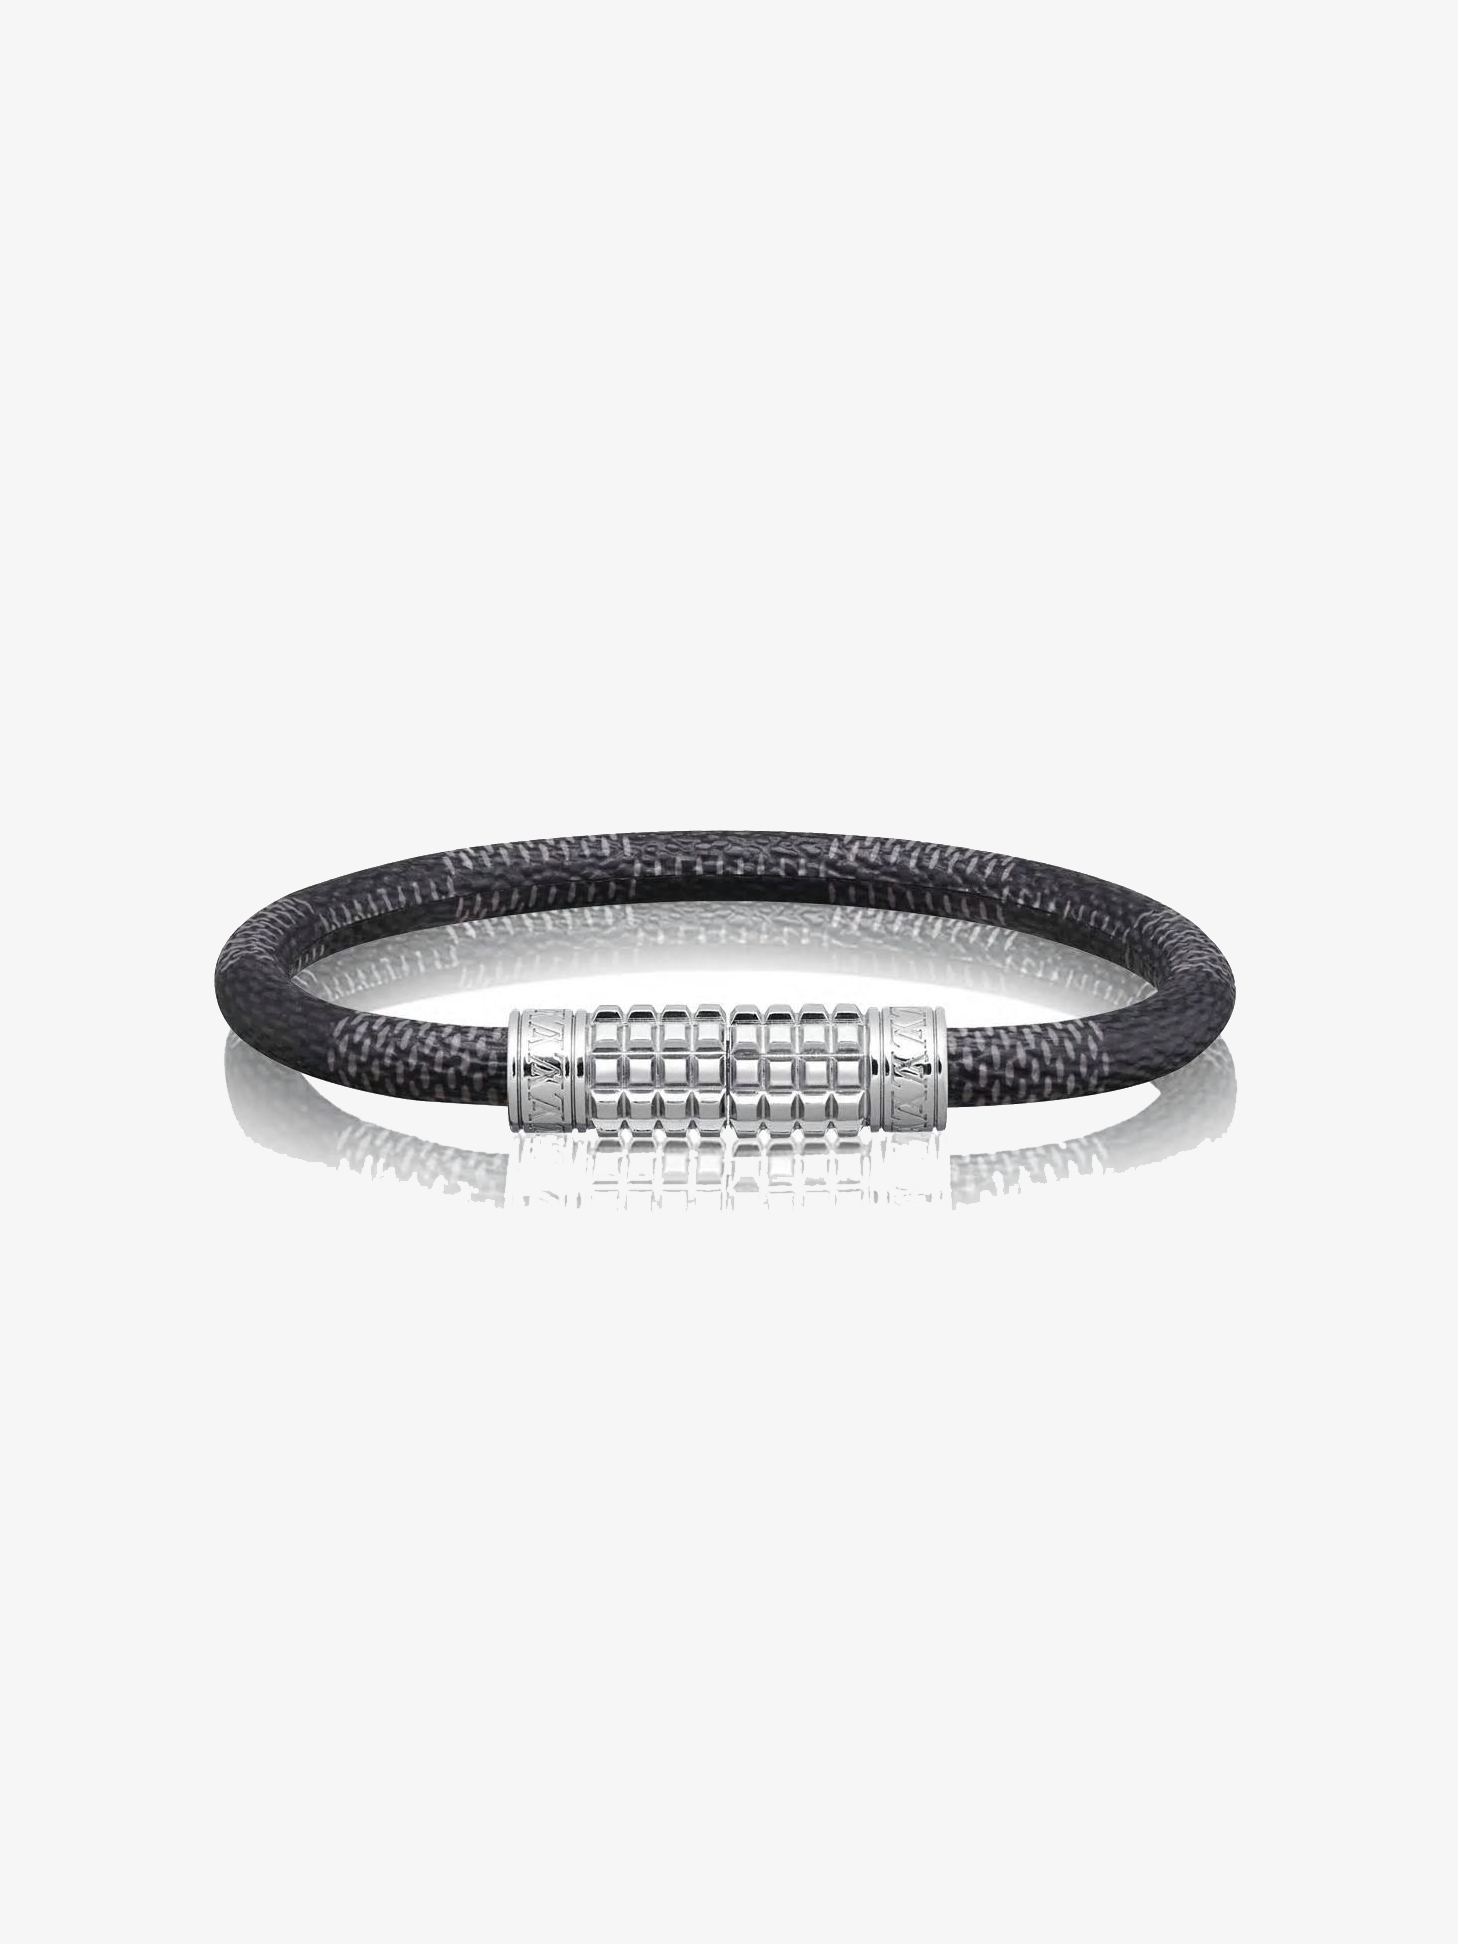 Shop Louis Vuitton Lv slim bracelet (LV SLIM BRACELET, M6456E) by Mikrie